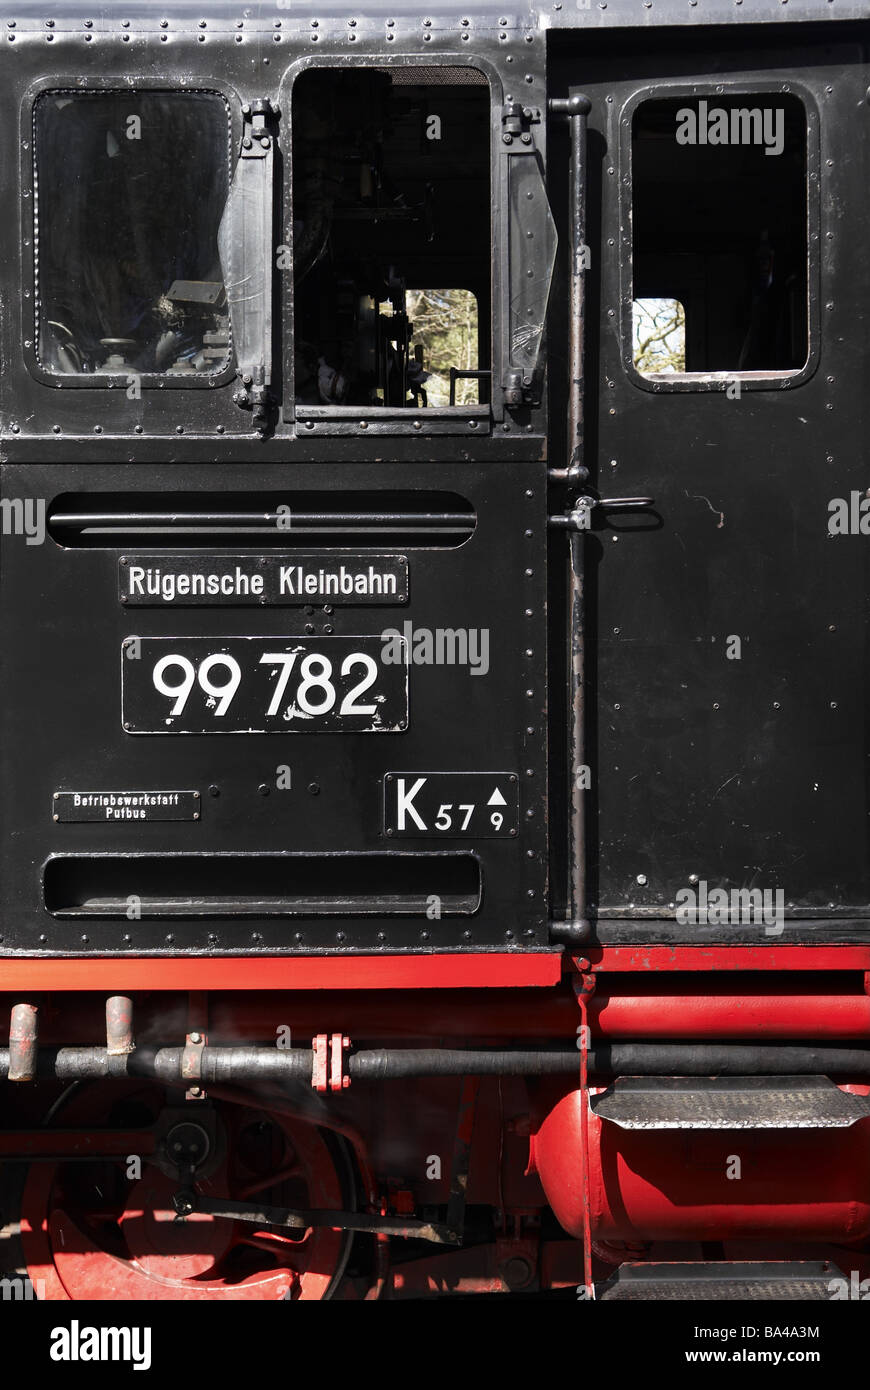 Ferrovia a Vapore loco dettaglio cabina loco cilindri di ruota di cilindri di pressione enorme Roland Meclemburgo-pomerania rimproveri Foto Stock